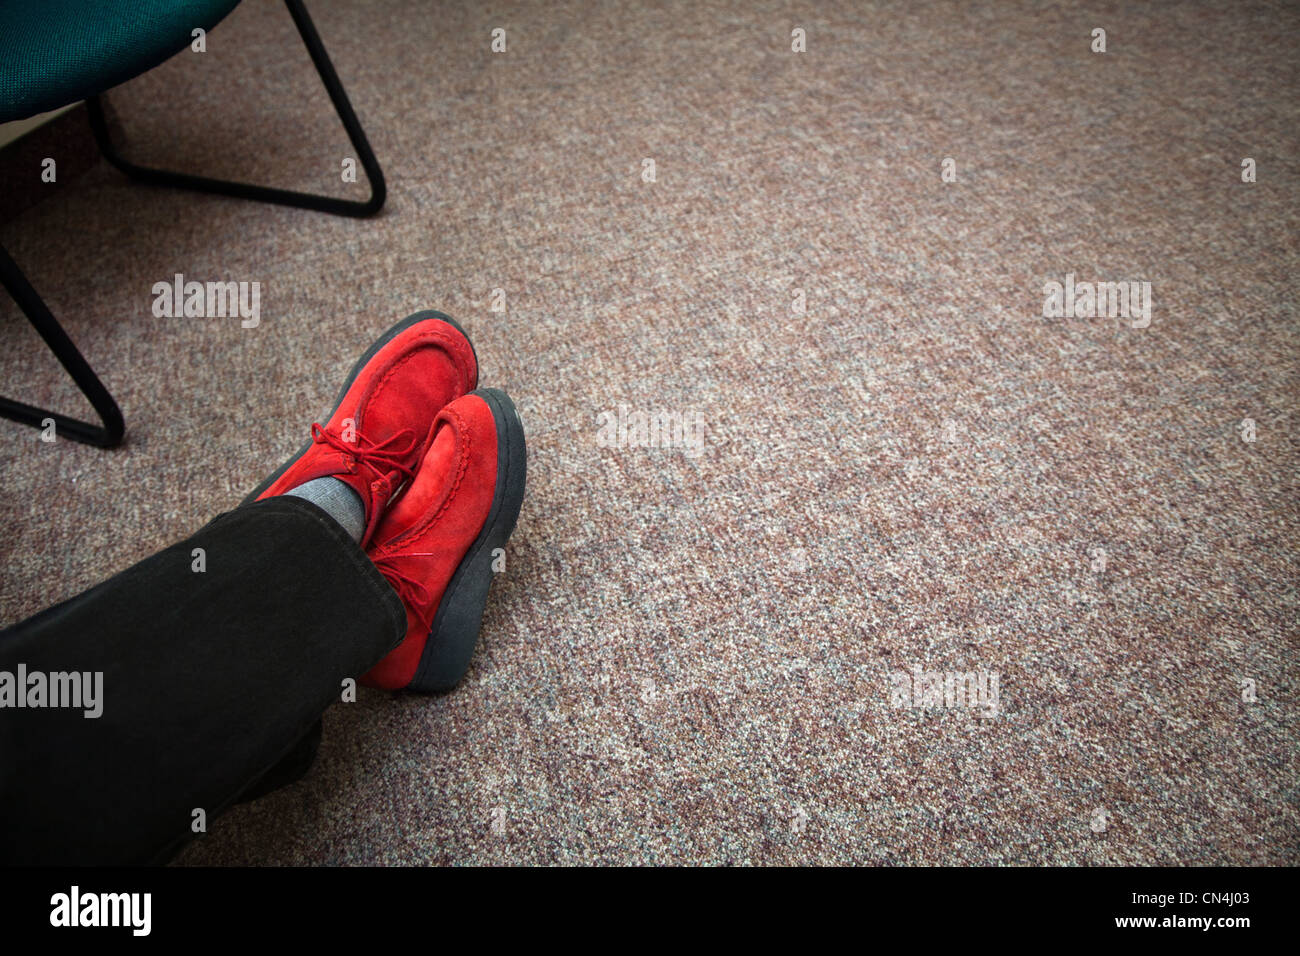 Chaussures rouges dans la salle d'attente Banque D'Images